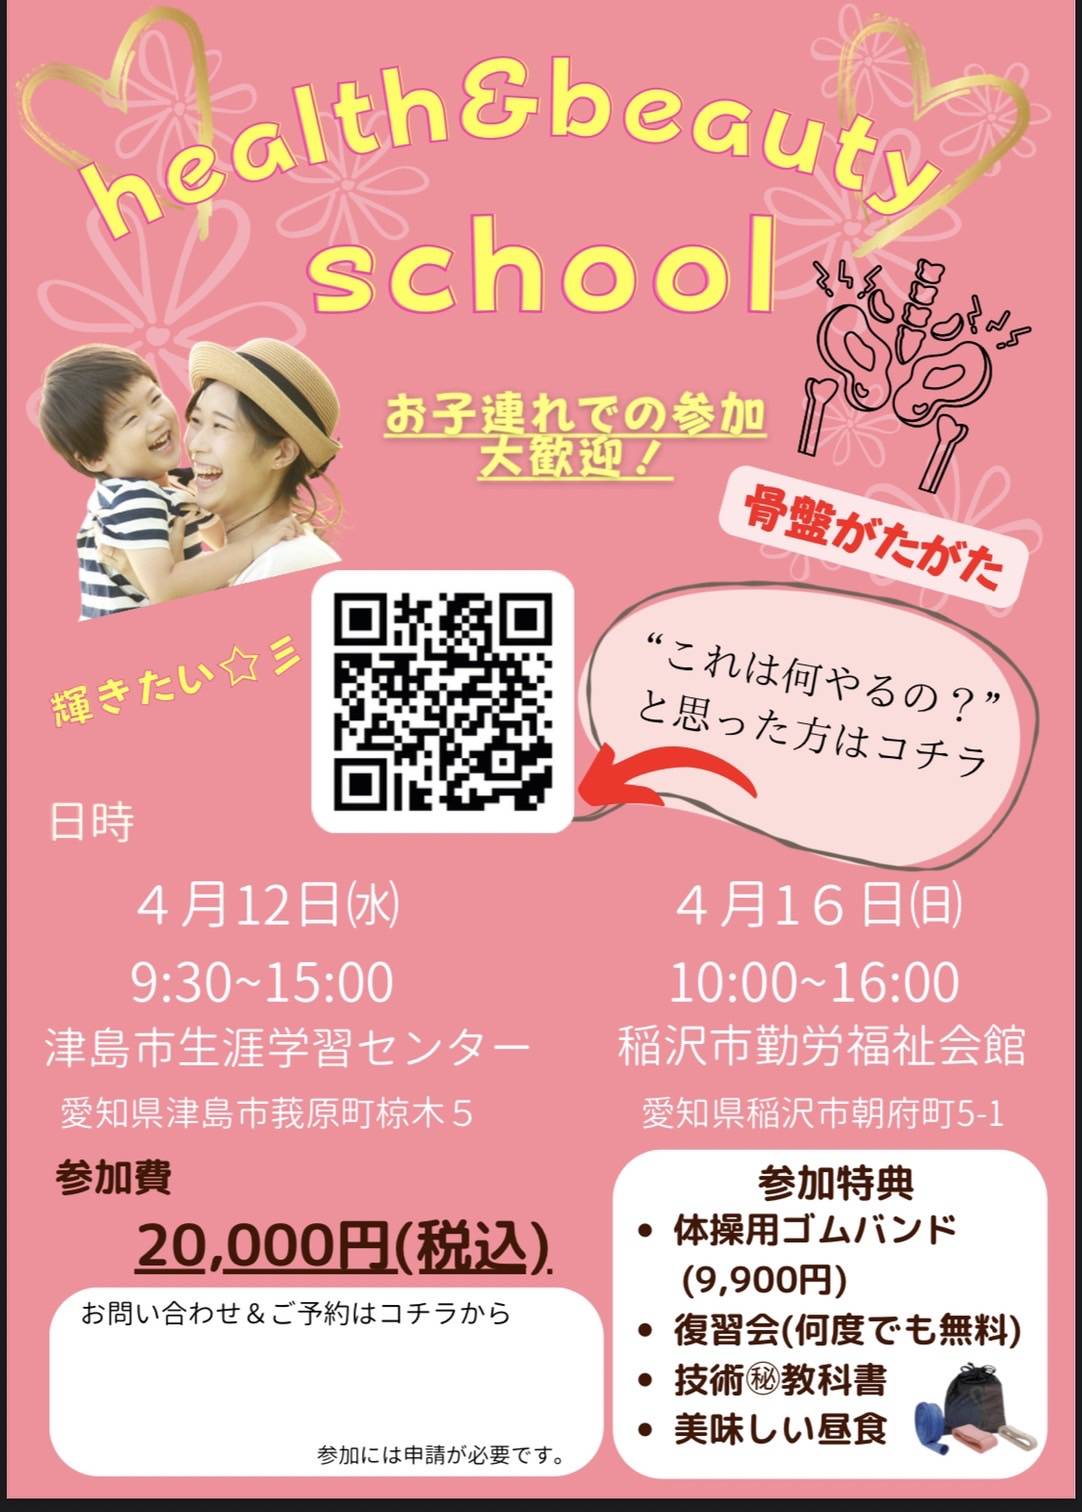 4/12(水)、4/16(日) 【health&beauty school】のお知らせ